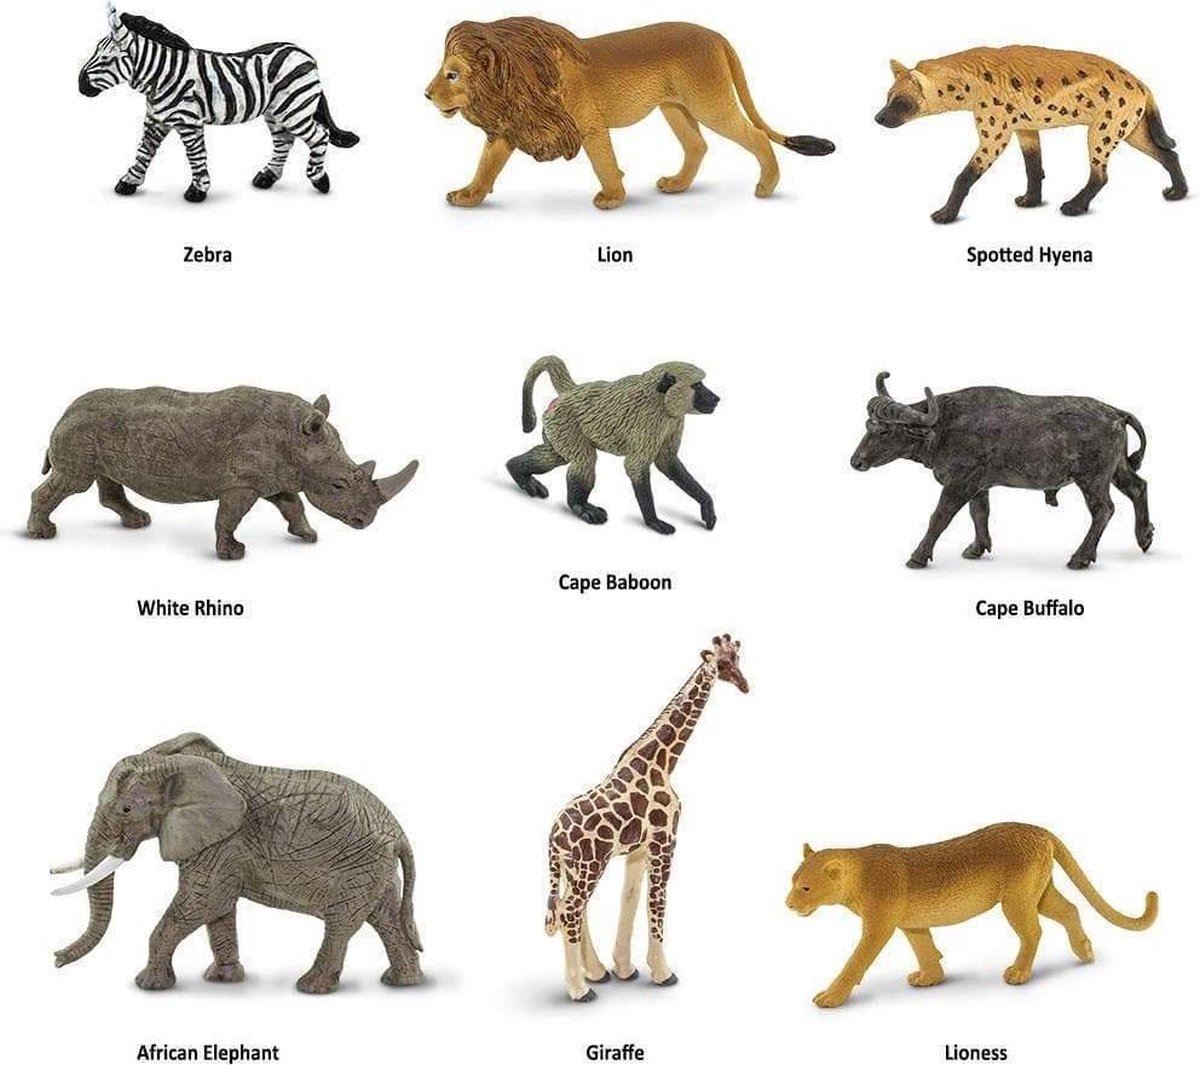 Safari Speelfiguren Zuid afrikaanse Dieren Toob Junior 9 delig